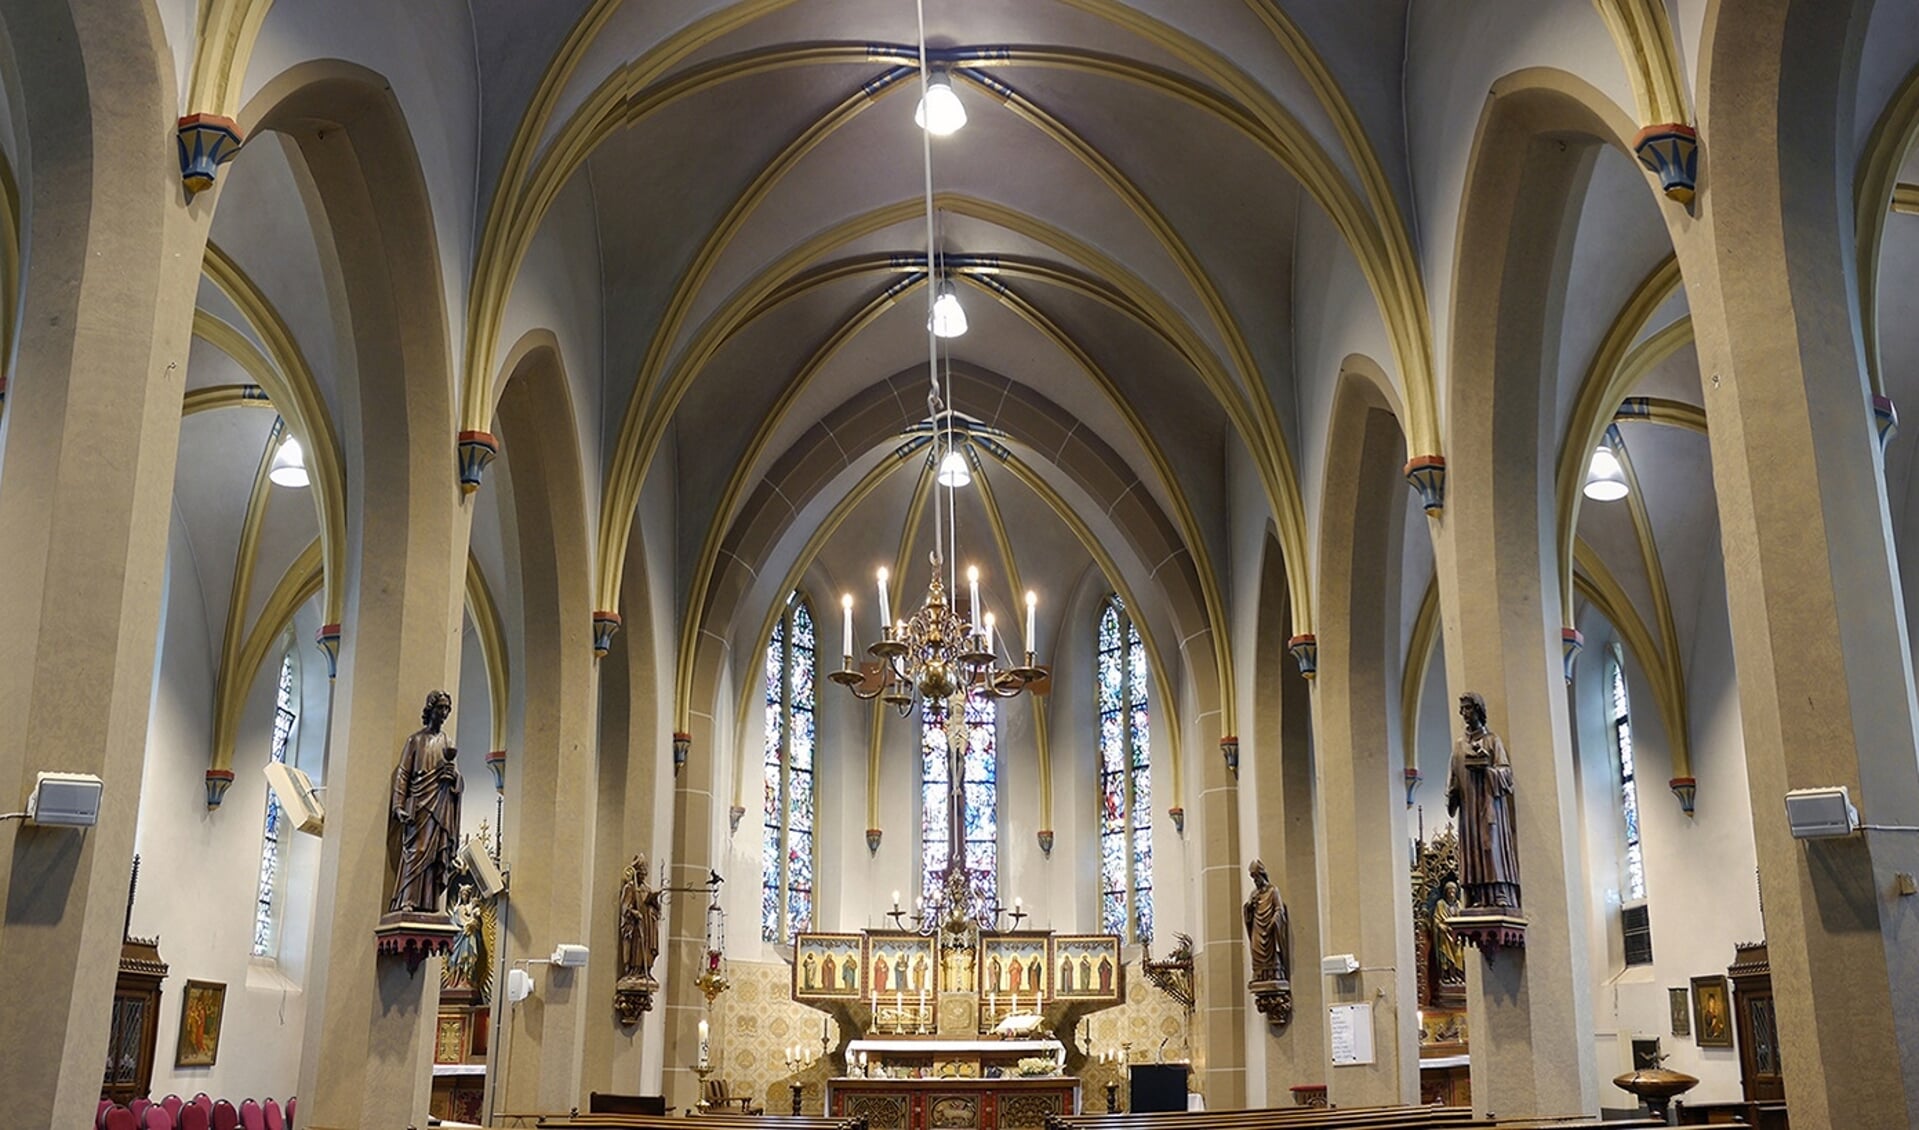 De H. Willibrordkerk in Olburgen. Foto: Gerald F.P. Gosselink-Ramos